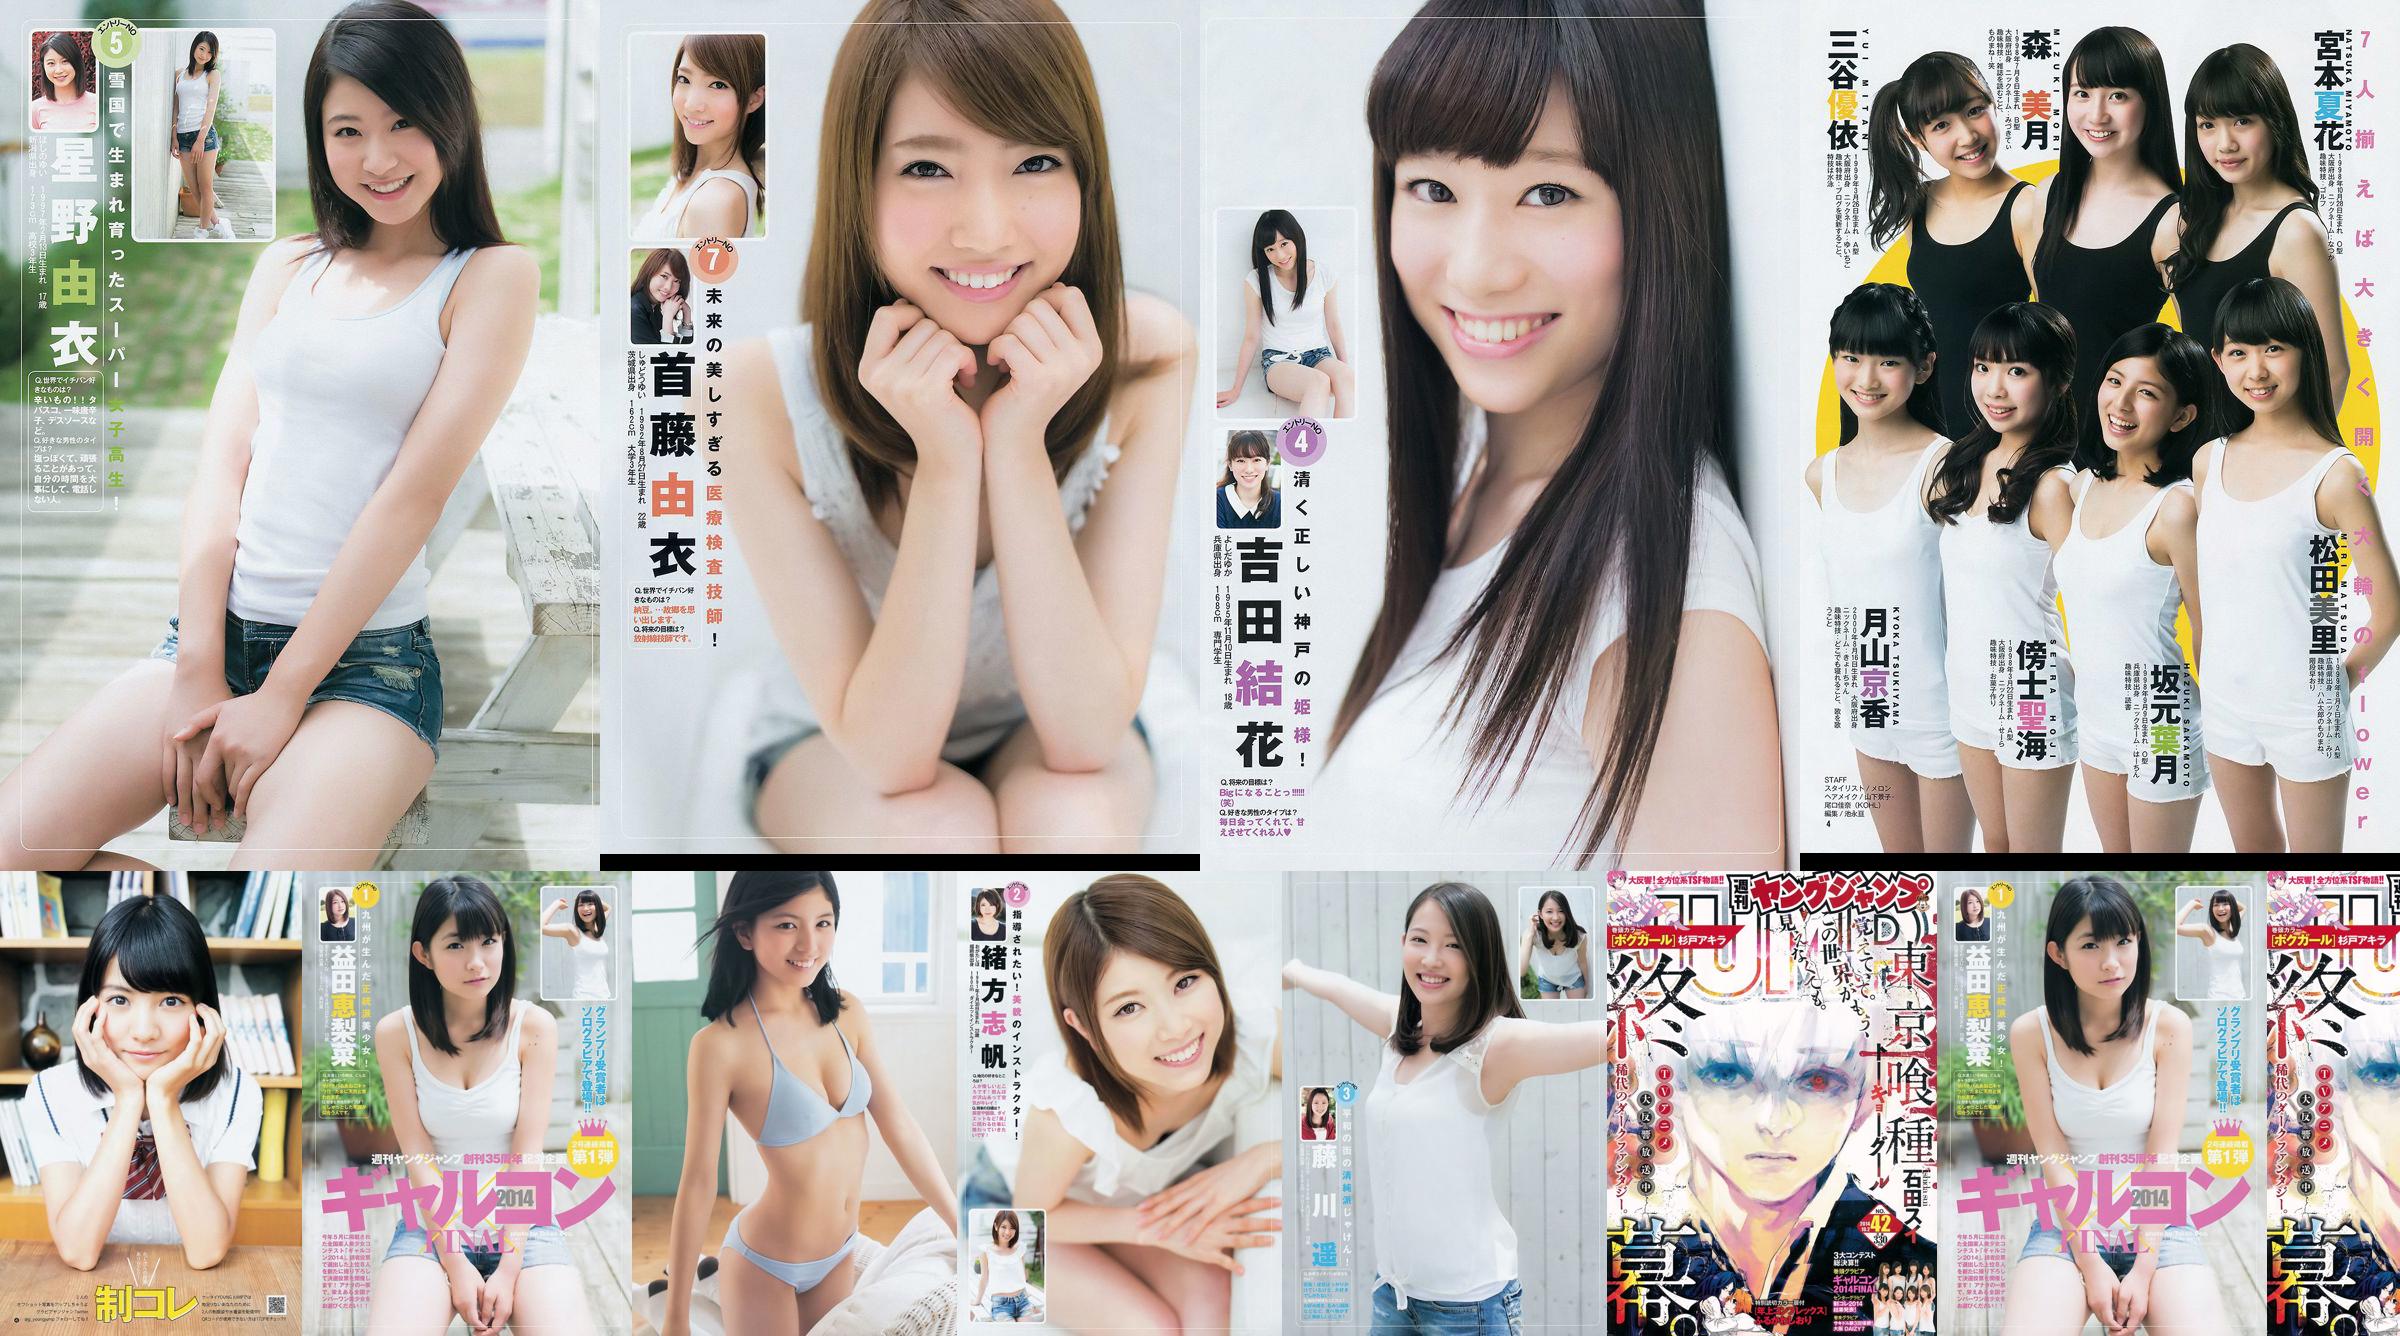 갸루콘 2014 제 이거 궁극 2014 오사카 DAIZY7 [Weekly Young Jump] 2014 년 No.42 사진 杂志 No.aa5450 페이지 3